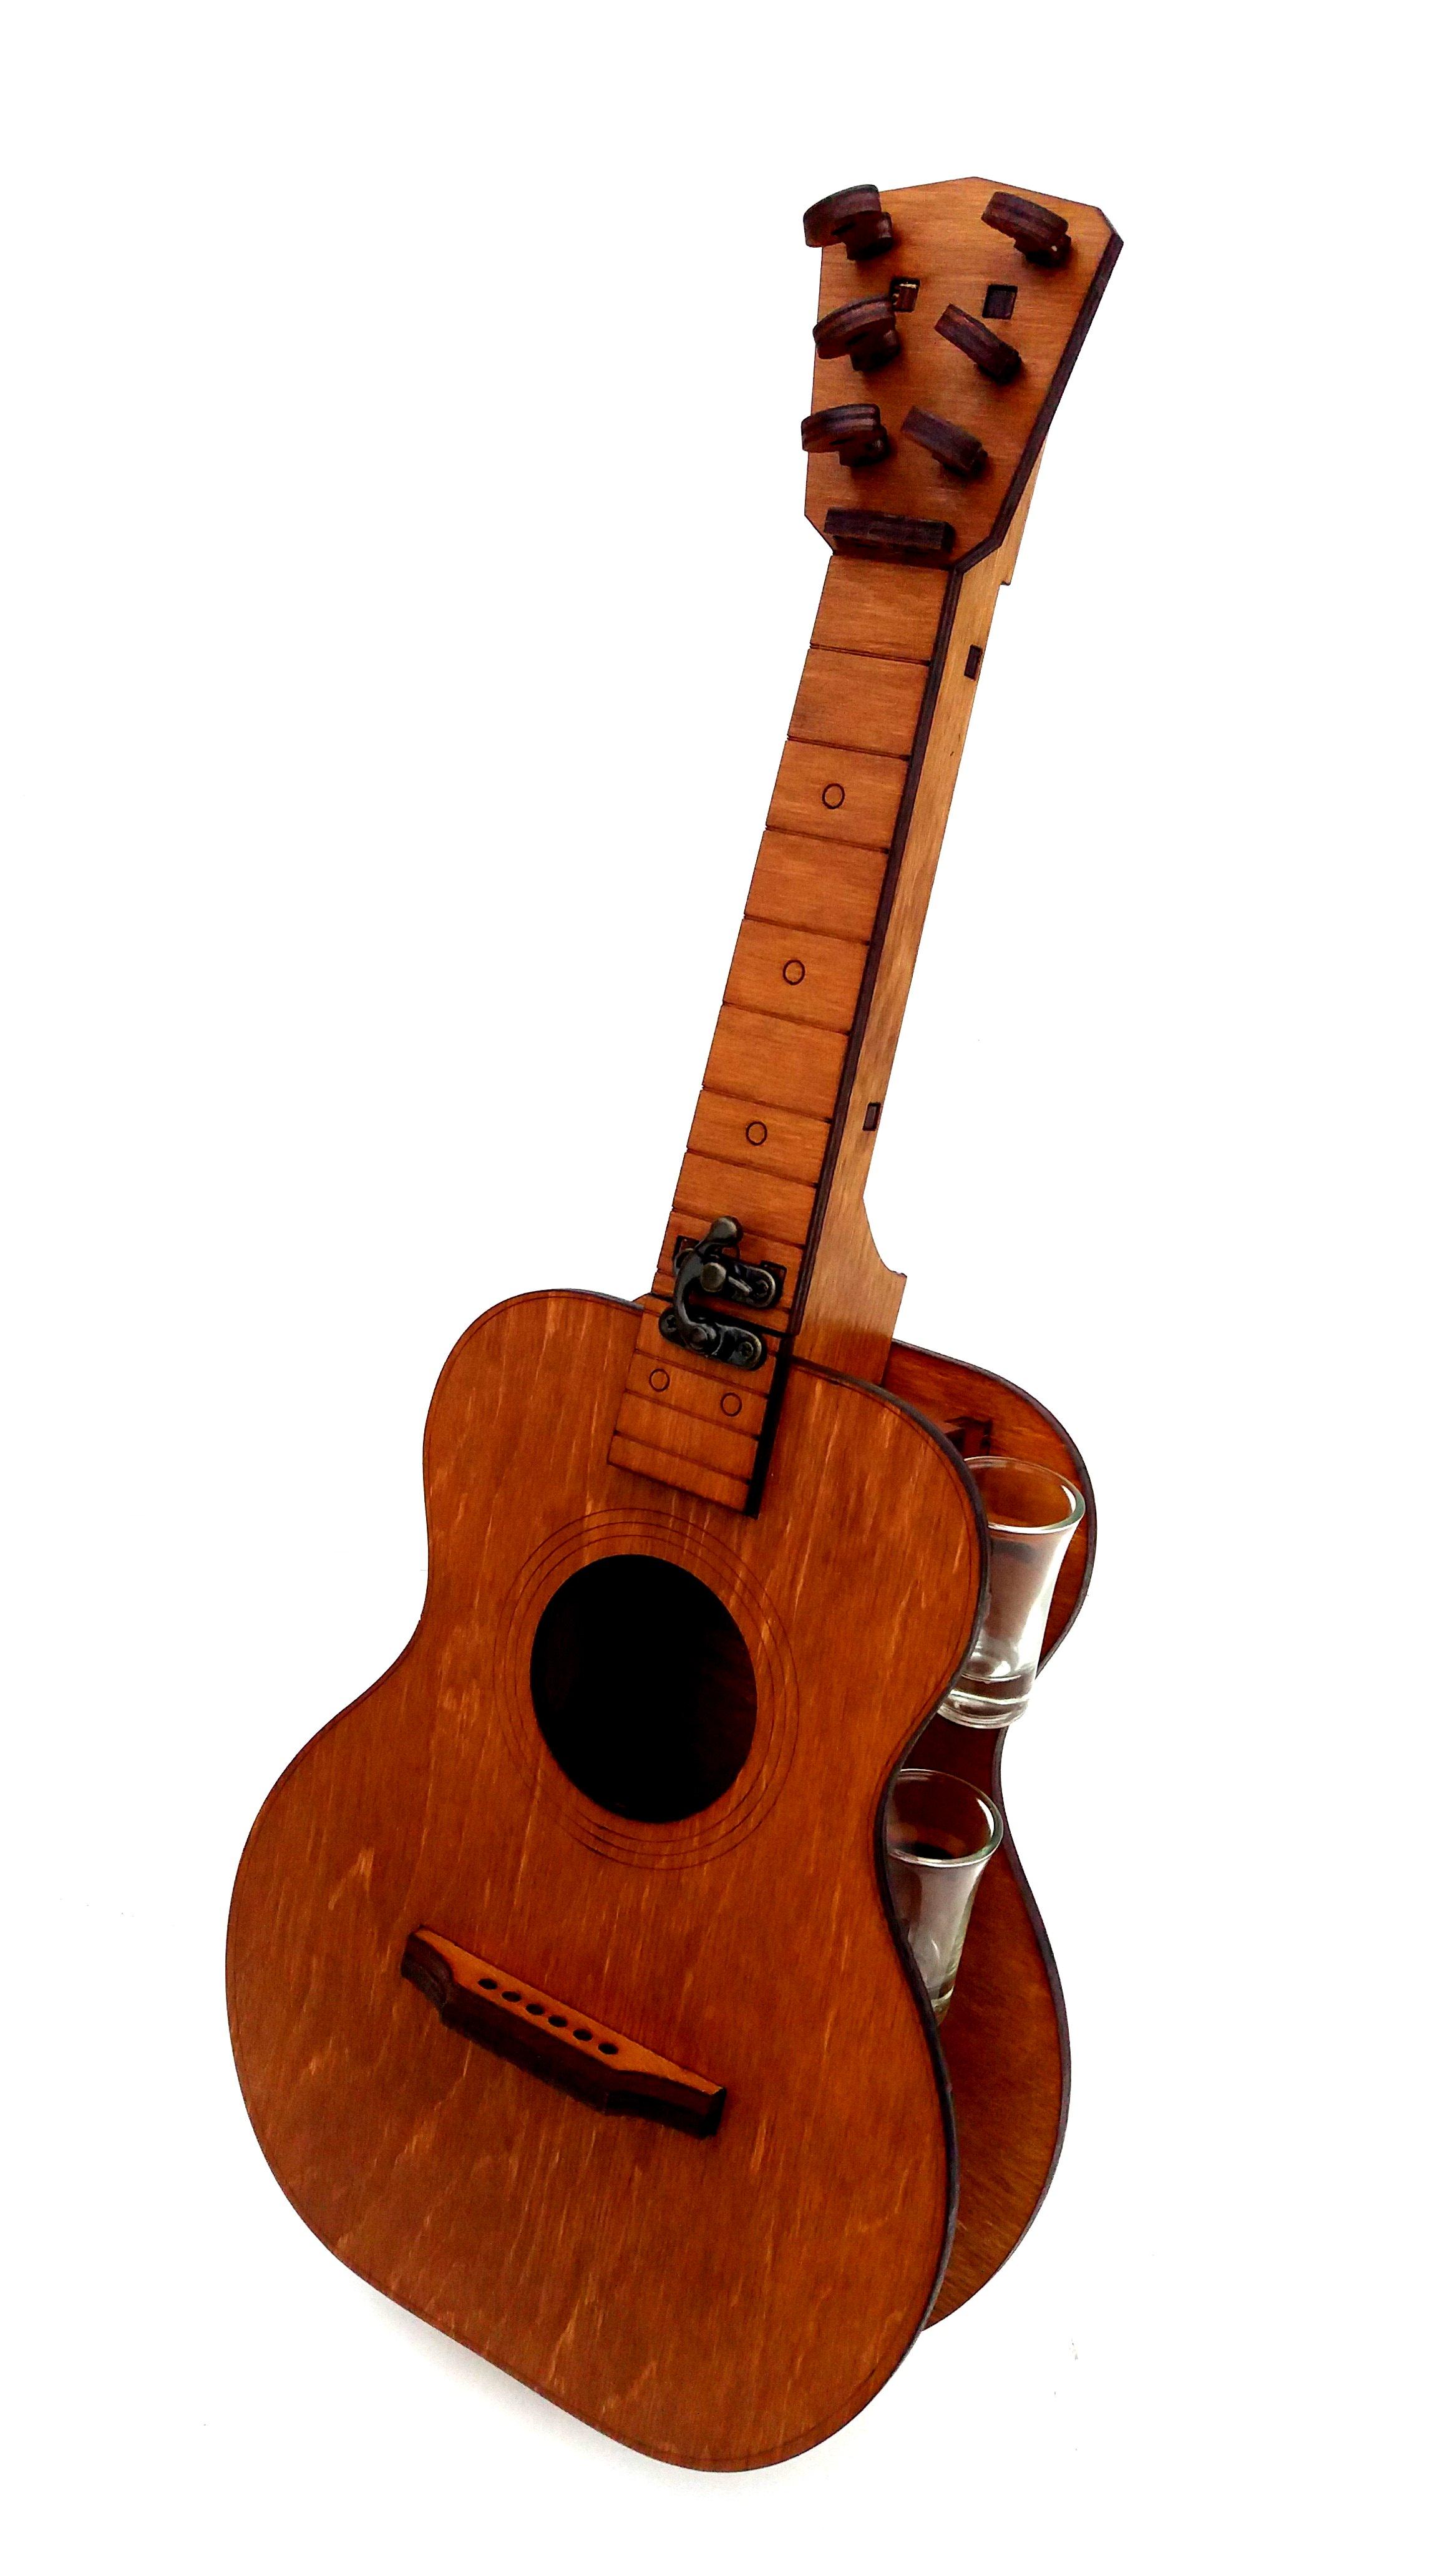 Міні-бар Гітара з рюмками дерев'яний